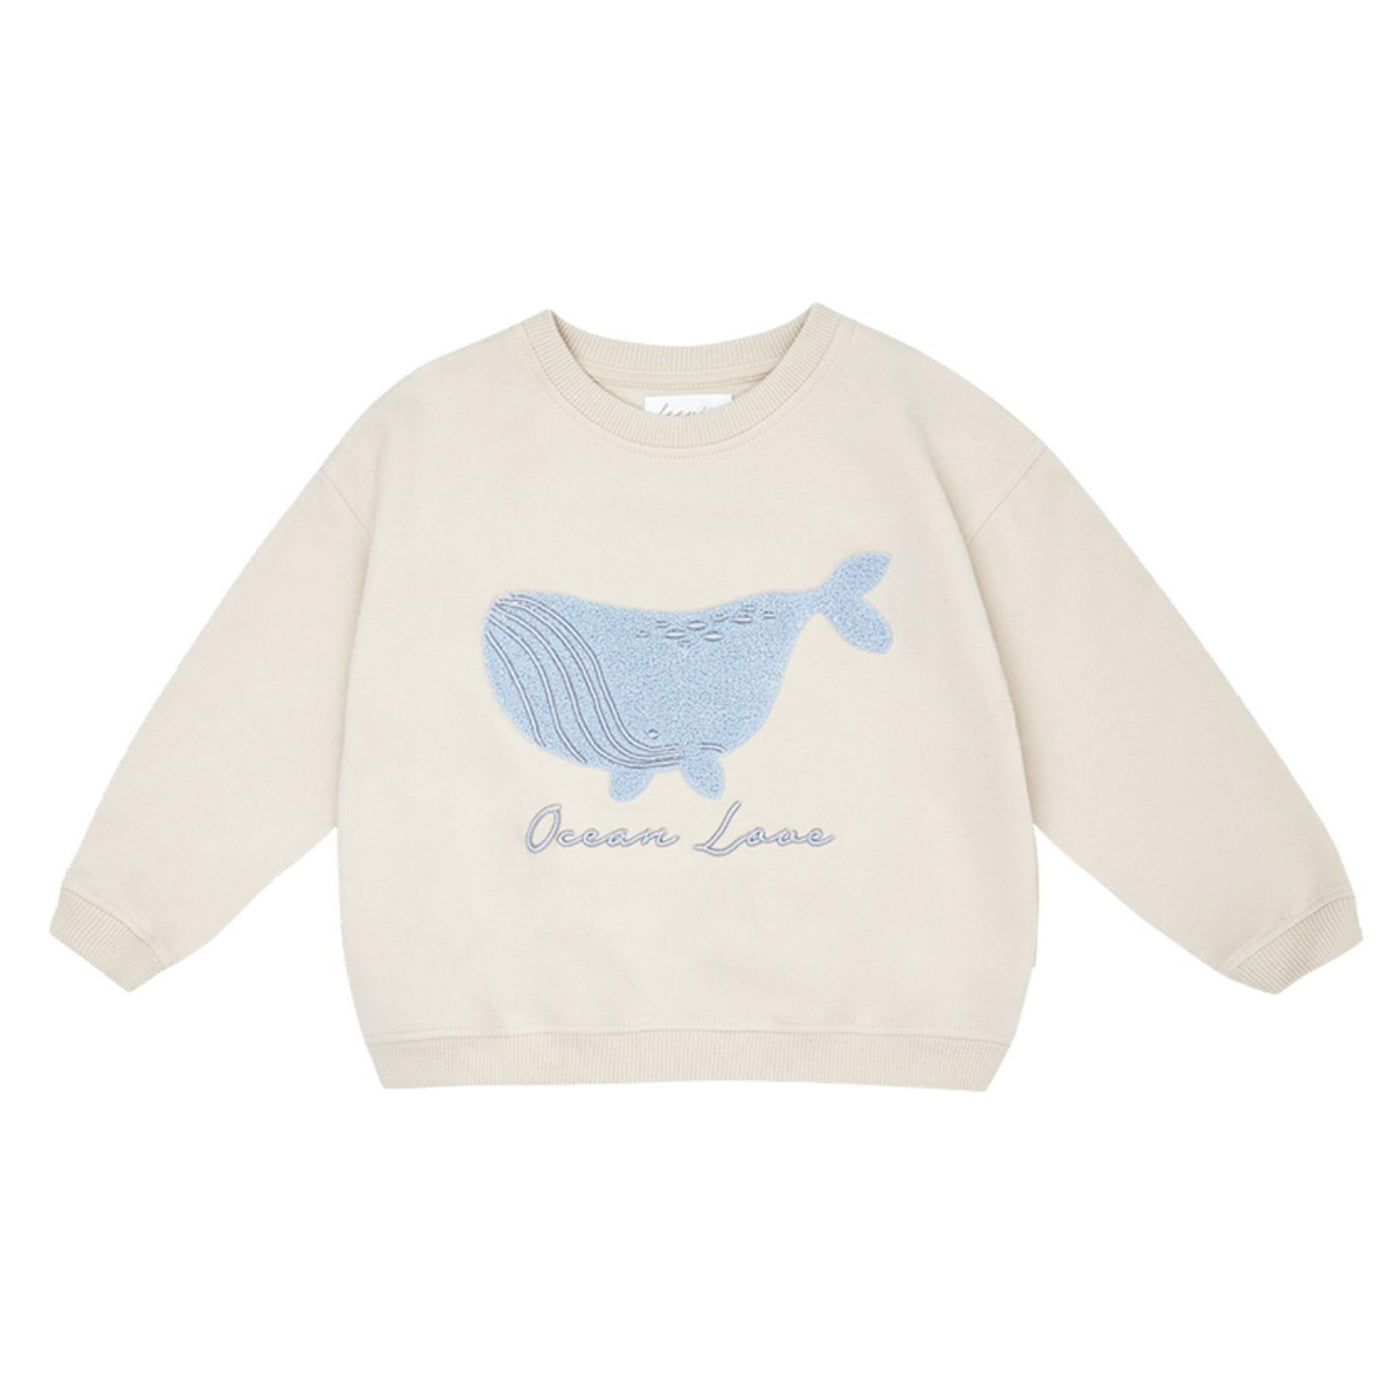 Oversized Sweatshirt "Ocean Love"